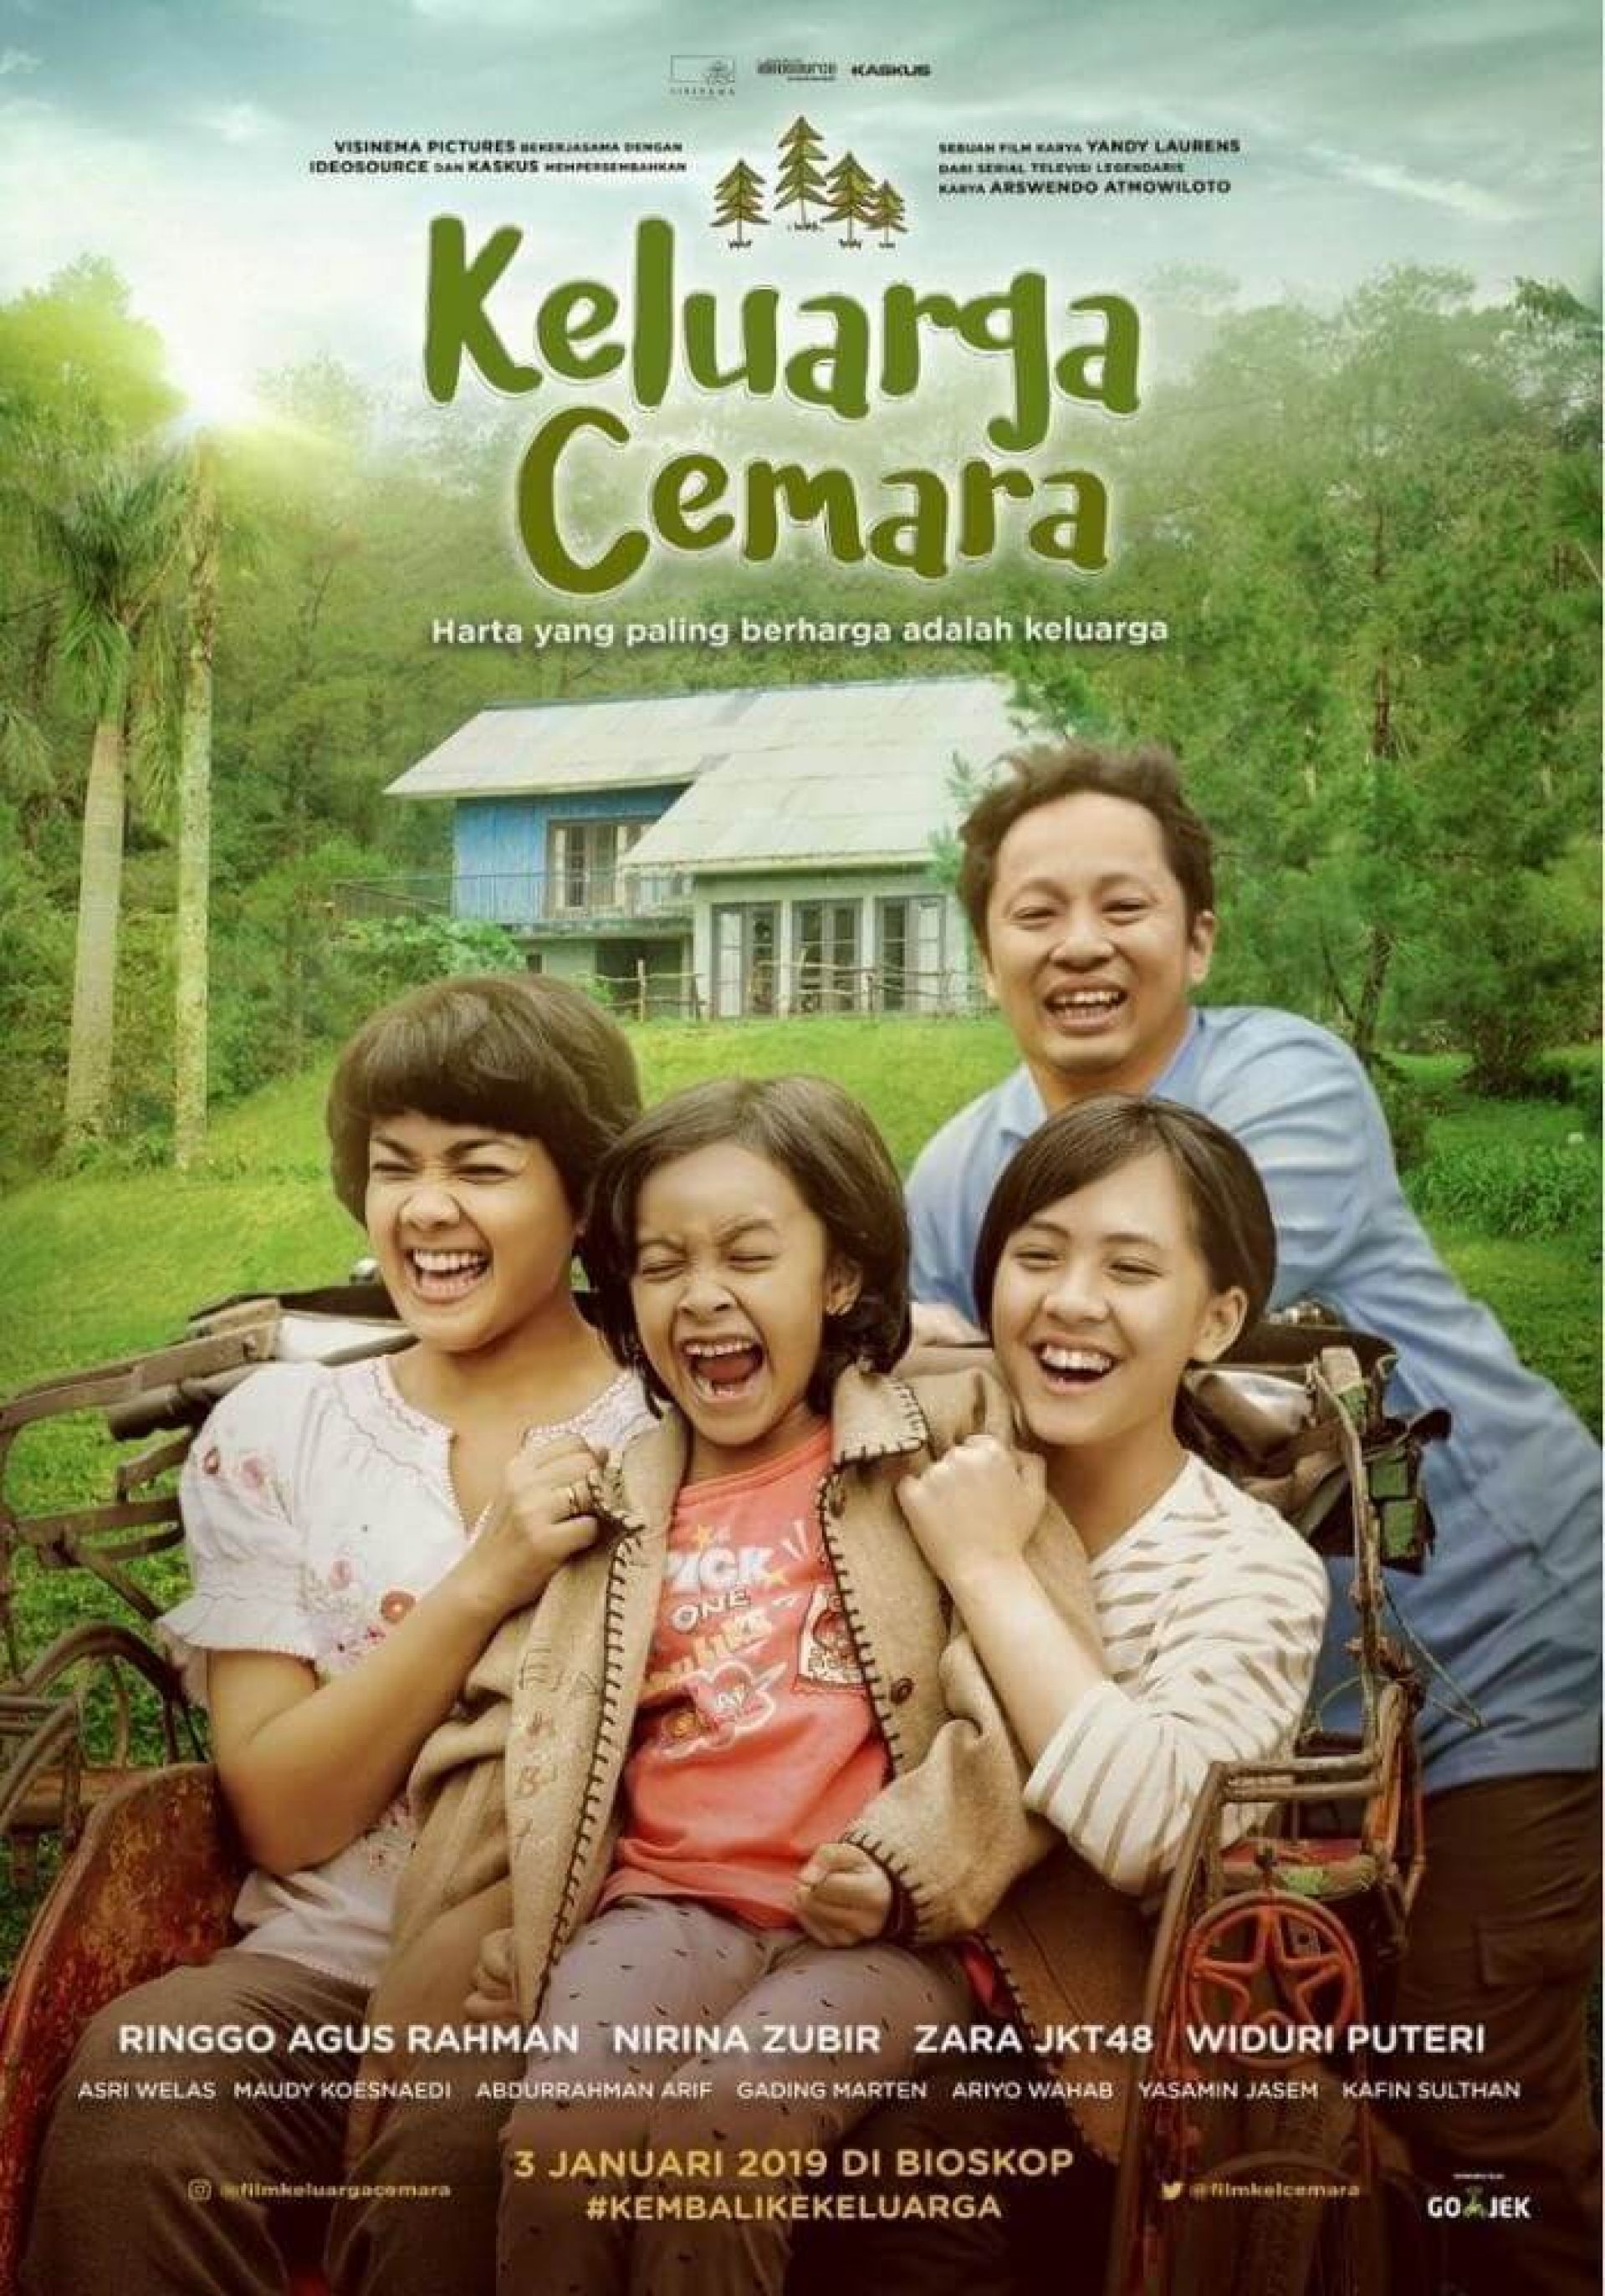 rekomendasi film indonesia terbaik keluarga cemara